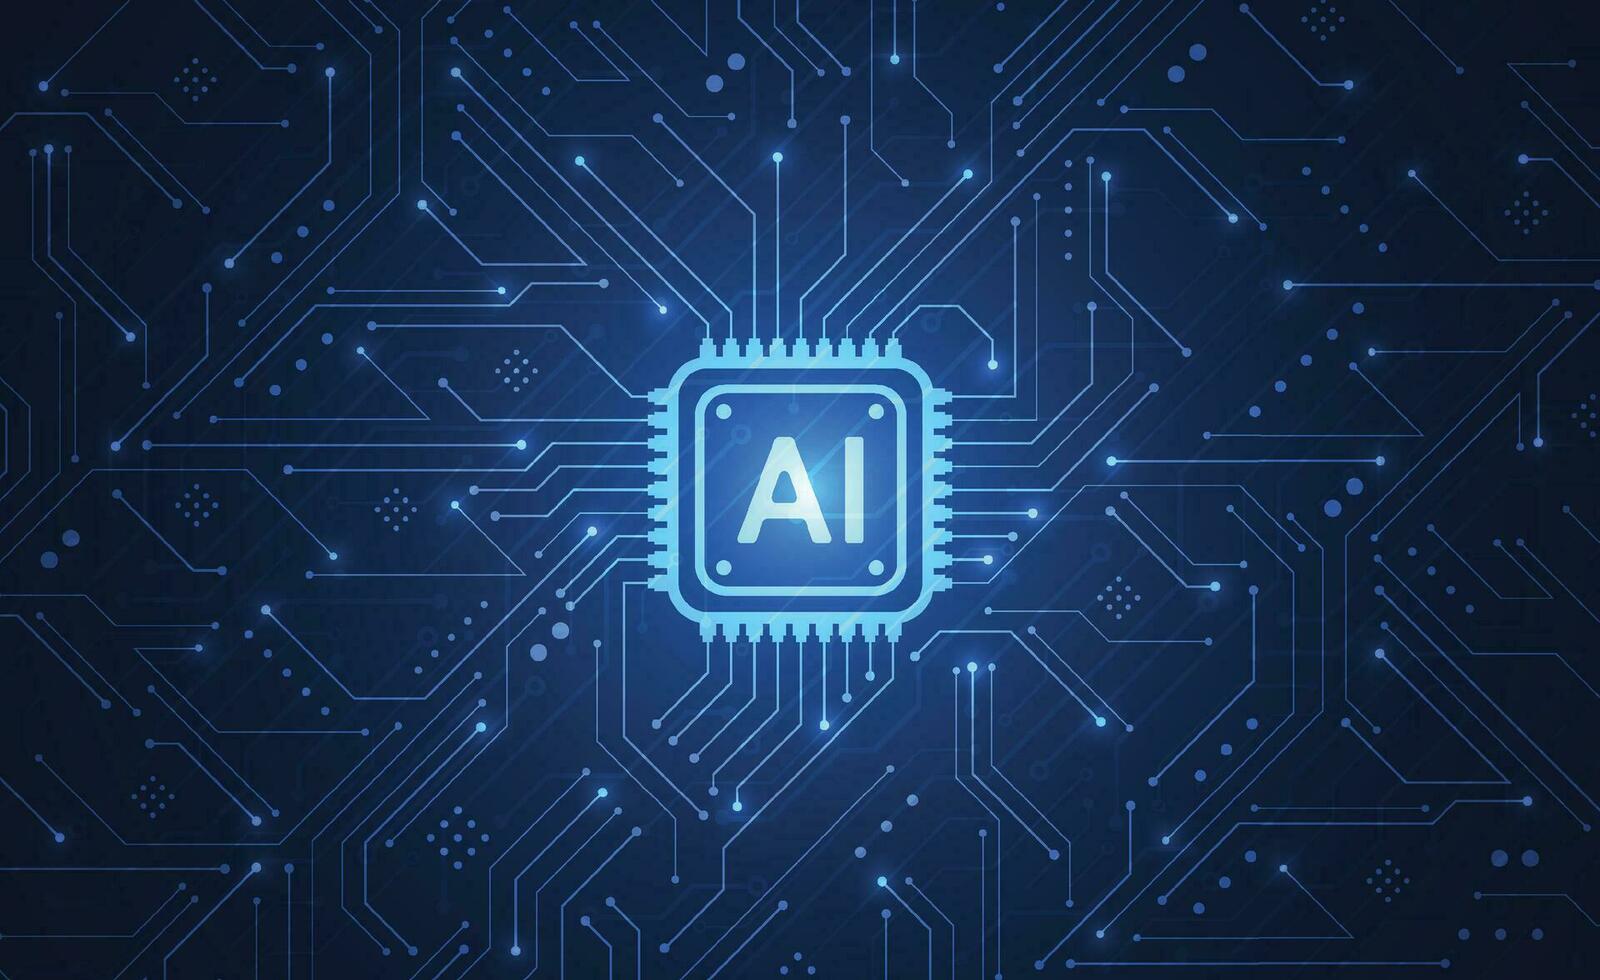 kunstmatige intelligentie-chipset op printplaat in futuristisch concept technologie artwork voor web, banner, kaart, omslag. vector illustratie